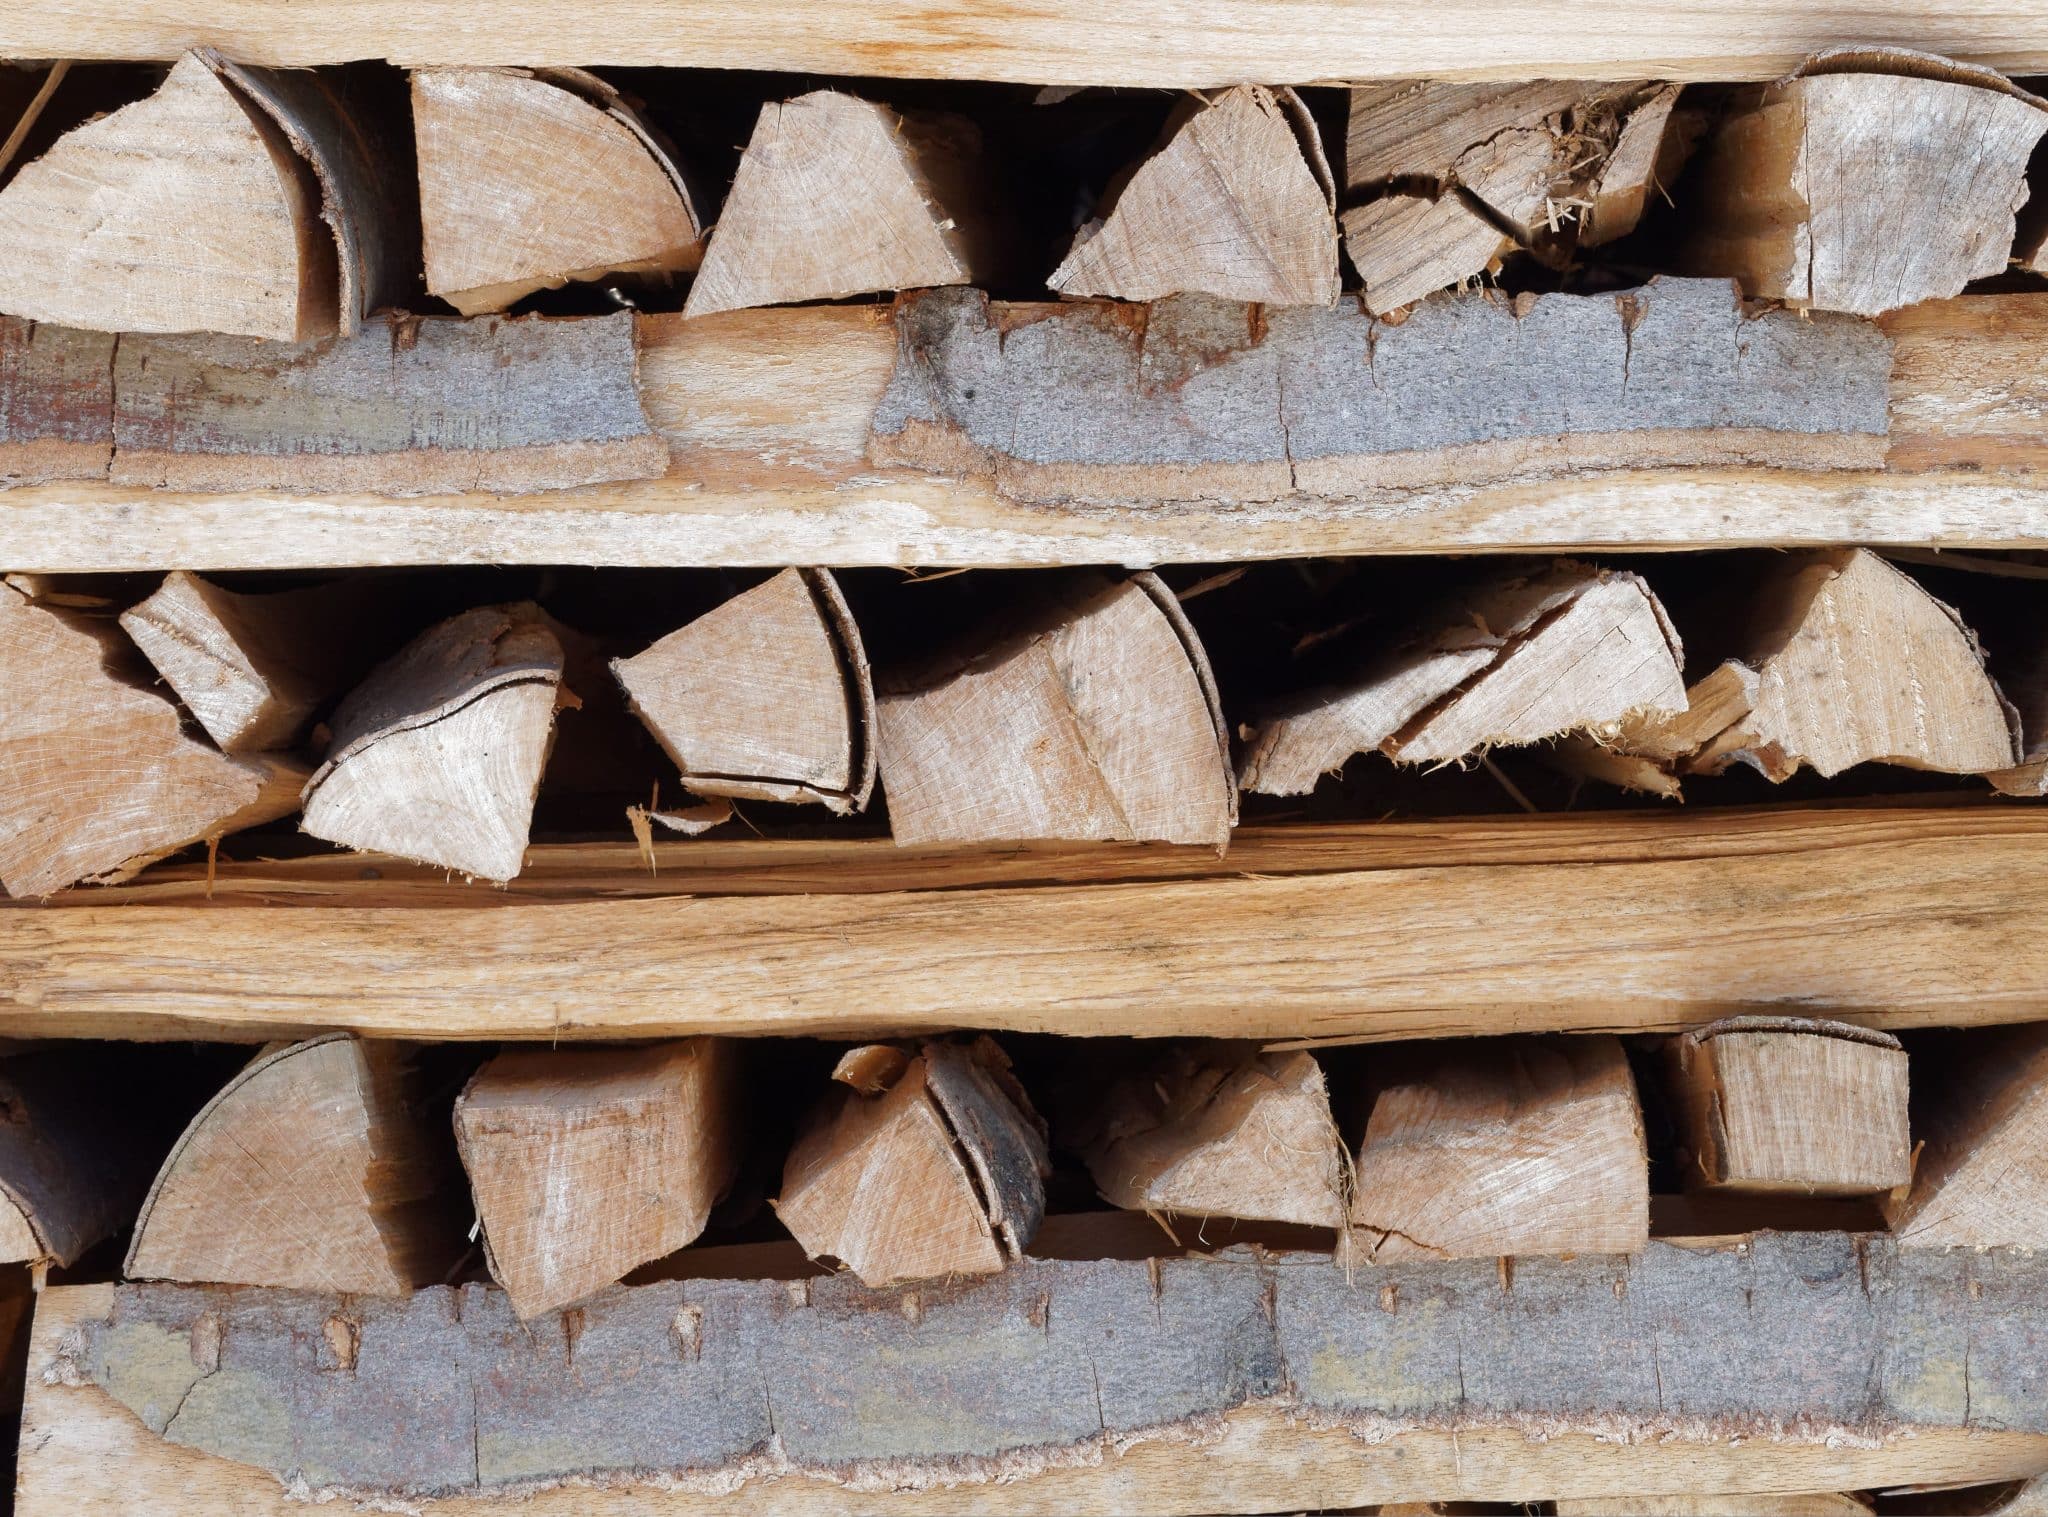 Chauffage efficace : bien stocker les bûches et utiliser du bois sec.